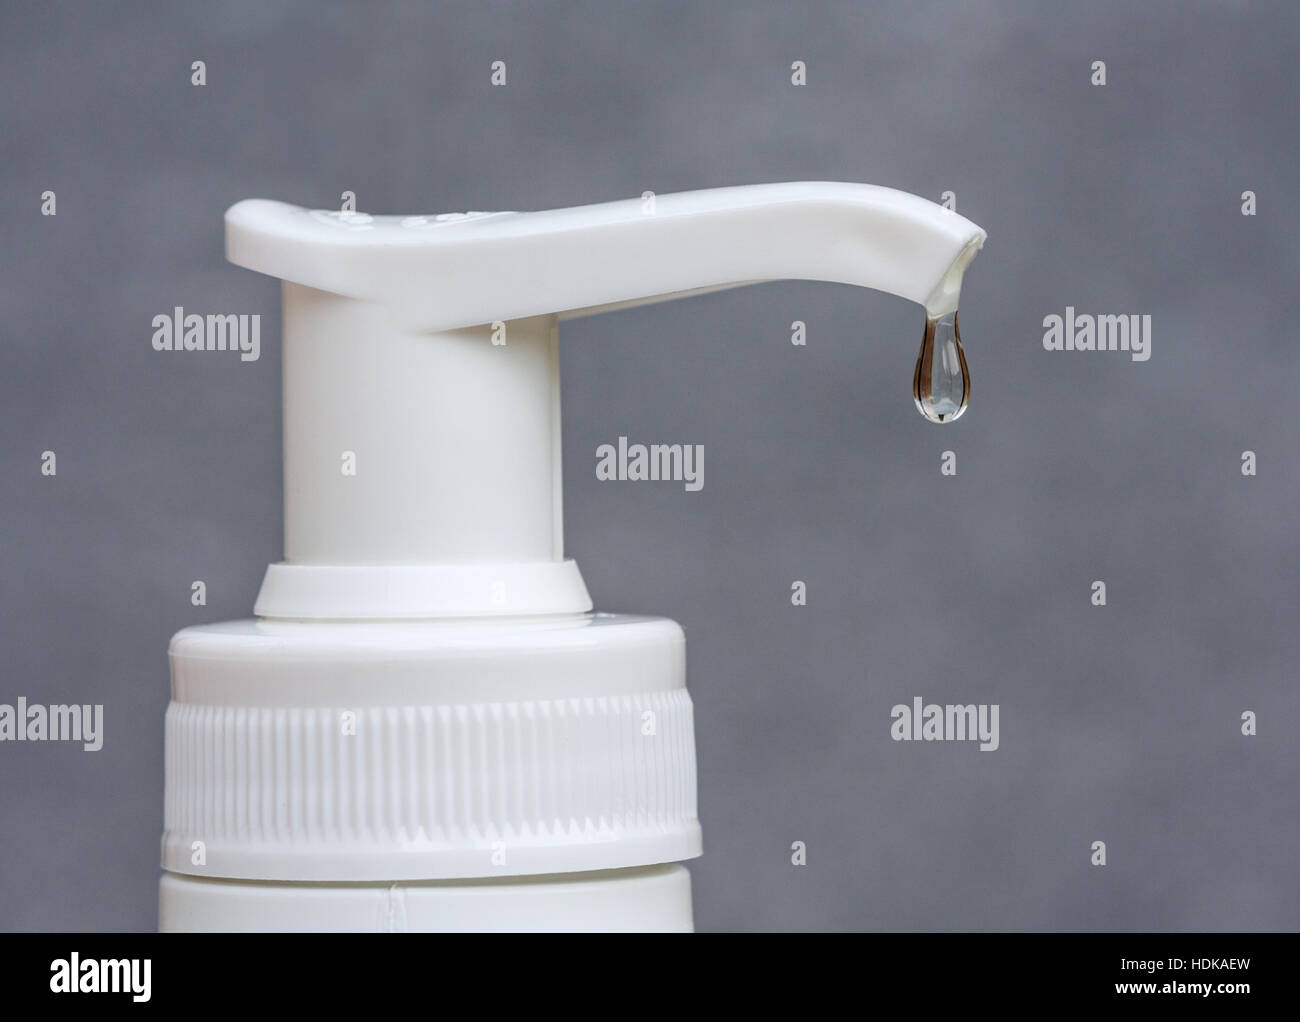 Libre d'une goutte transparente suspendue à un distributeur de savon sur un fond gris. Banque D'Images